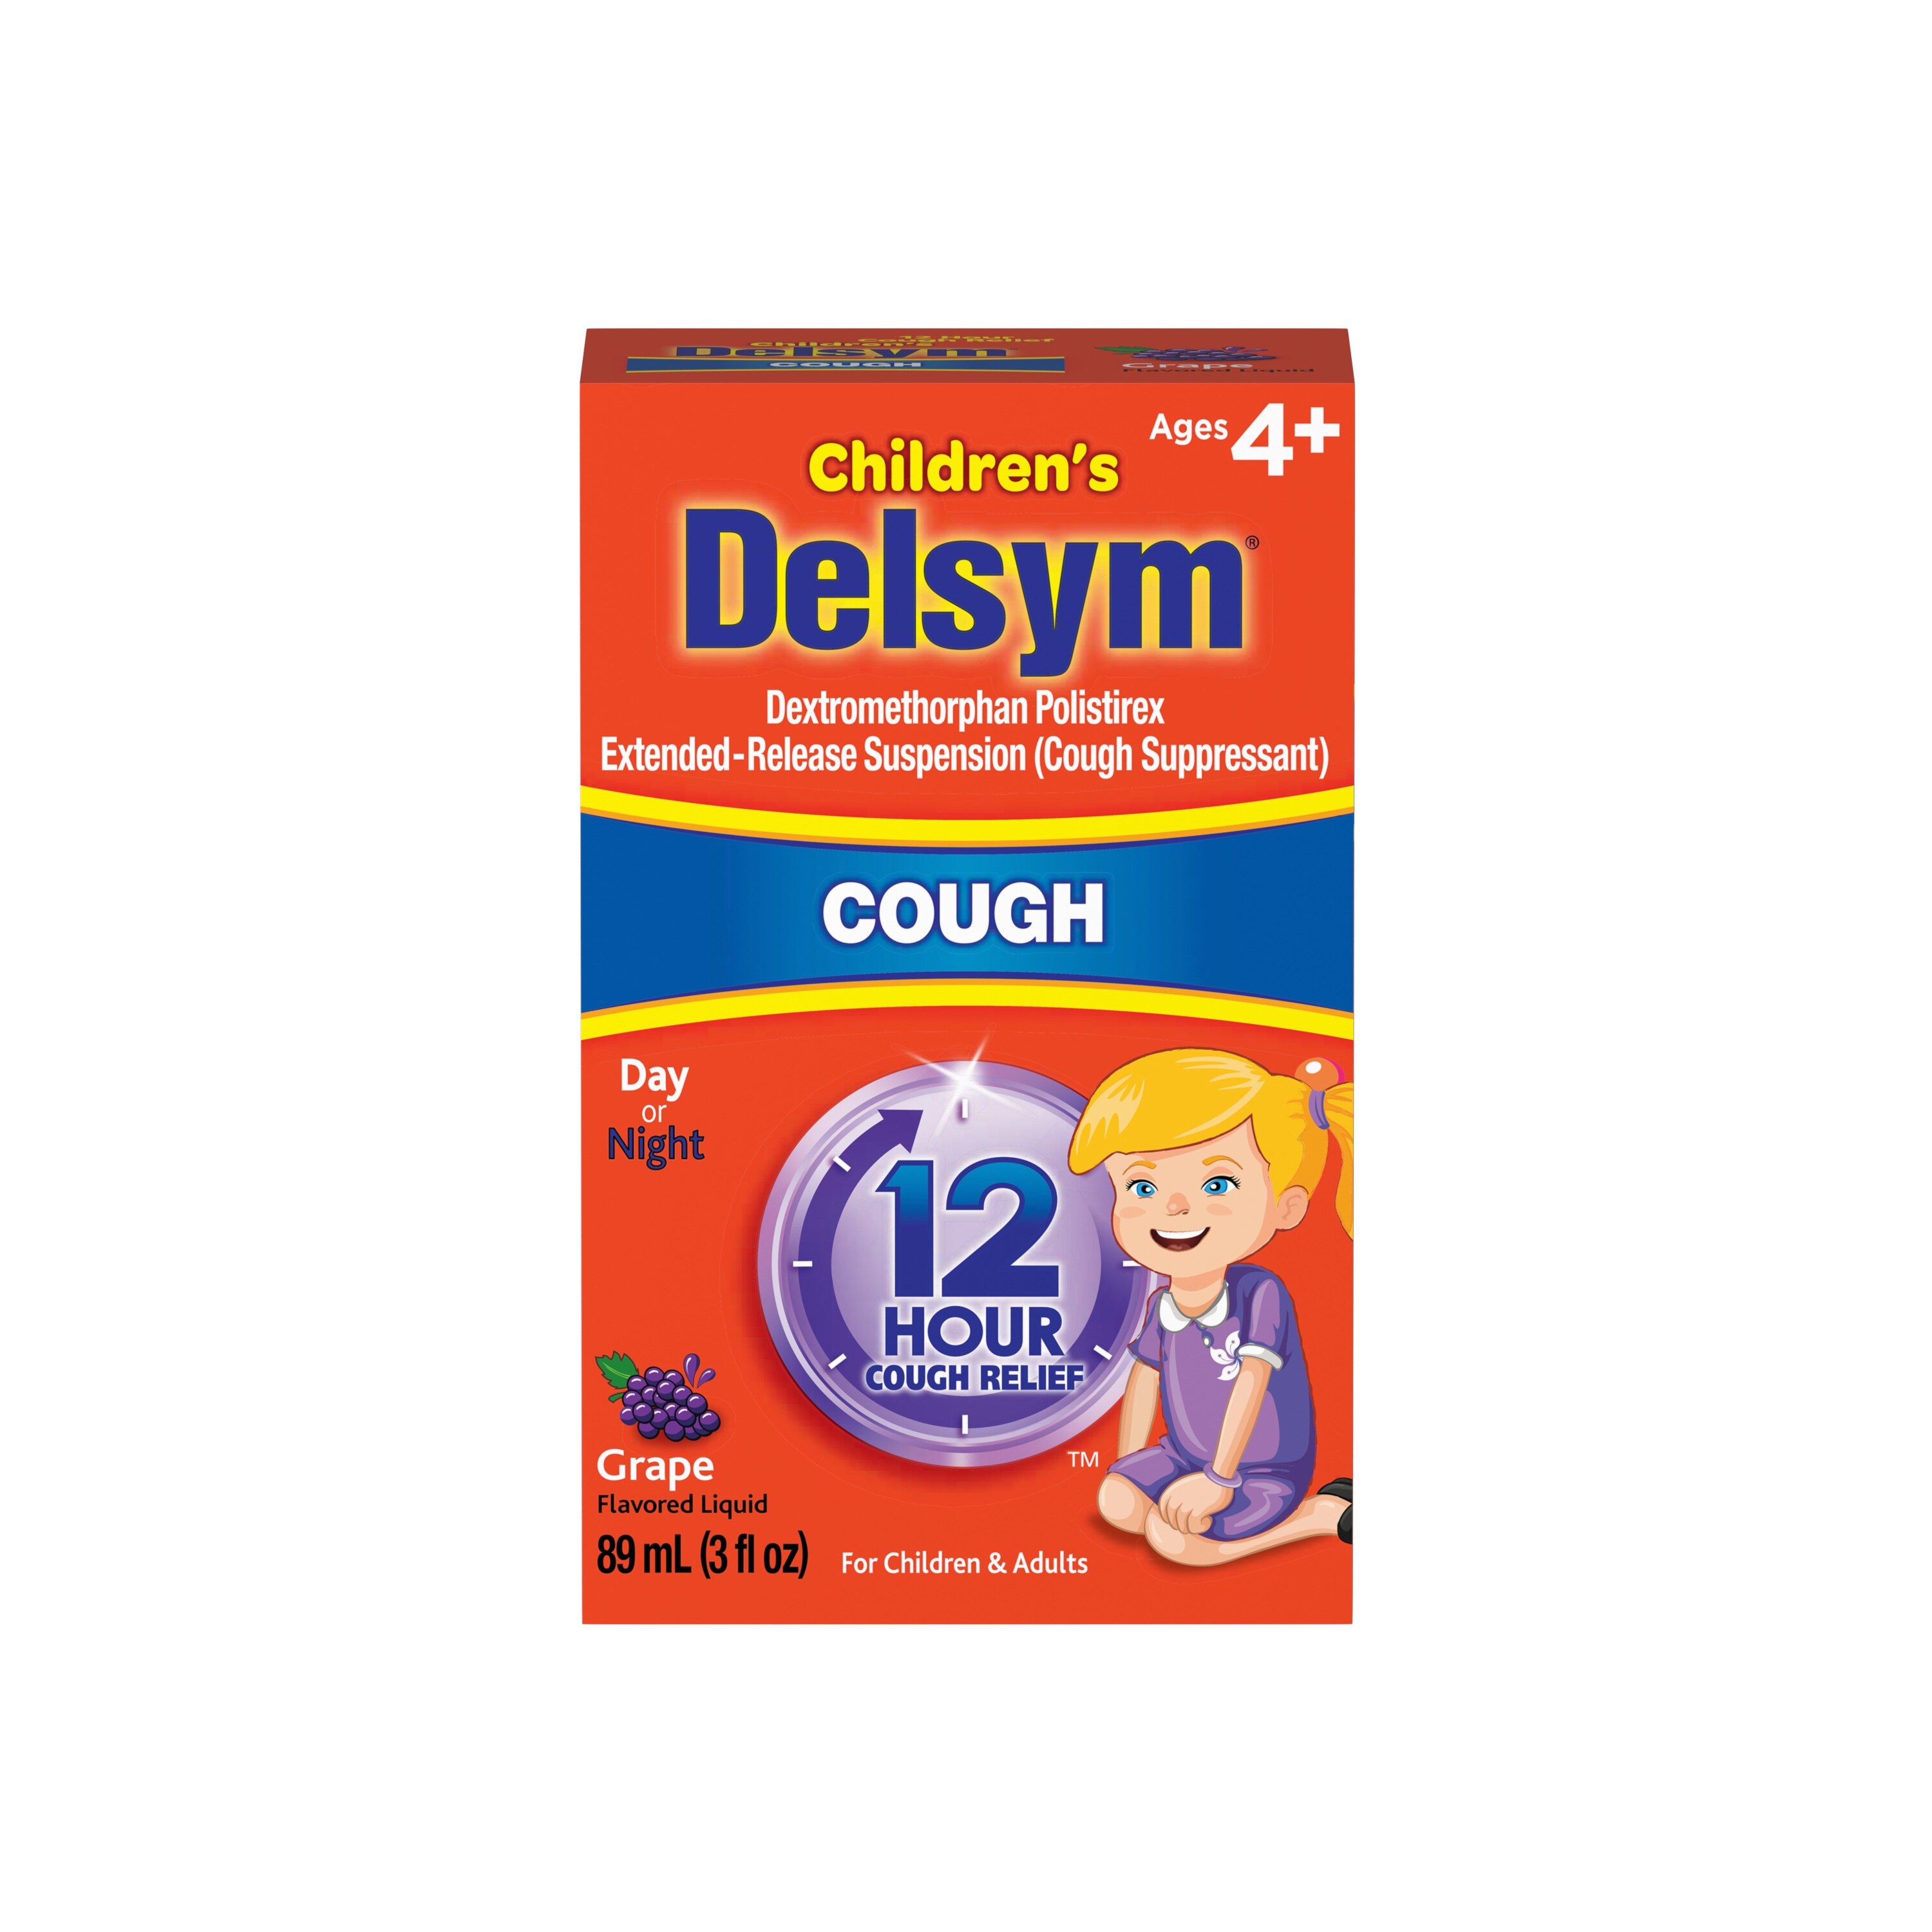 Delsym Children's Cough Suppressant Liquid, 3 OZ, Grape , CVS